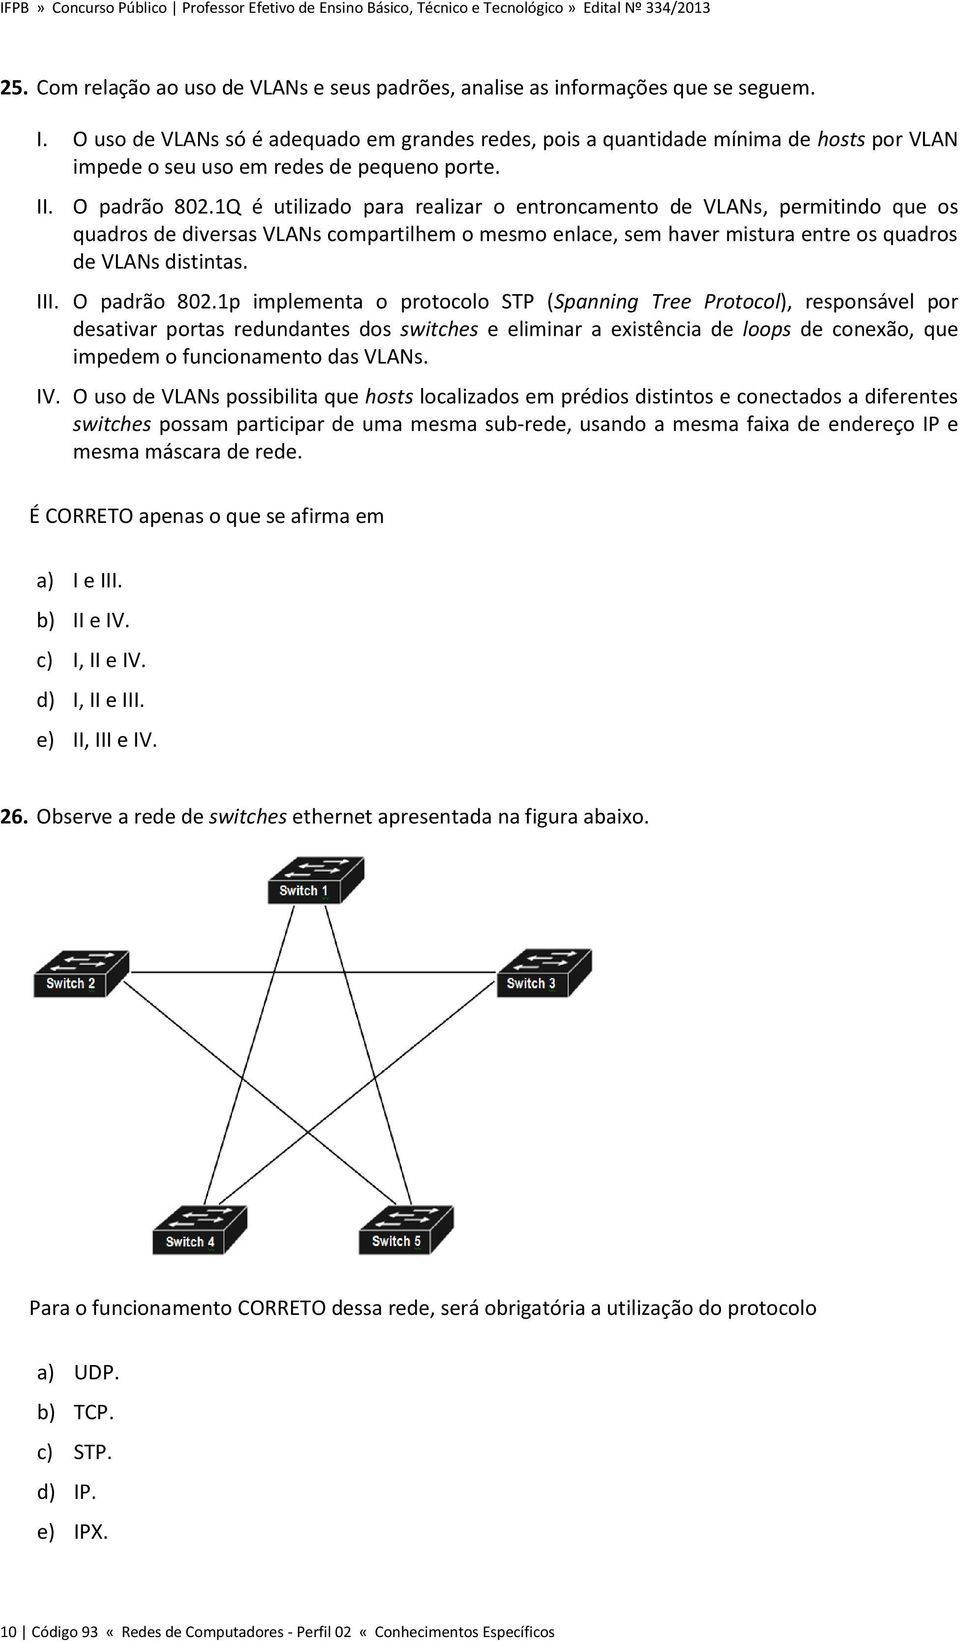 1Q é utilizado para realizar o entroncamento de VLANs, permitindo que os quadros de diversas VLANs compartilhem o mesmo enlace, sem haver mistura entre os quadros de VLANs distintas. III.